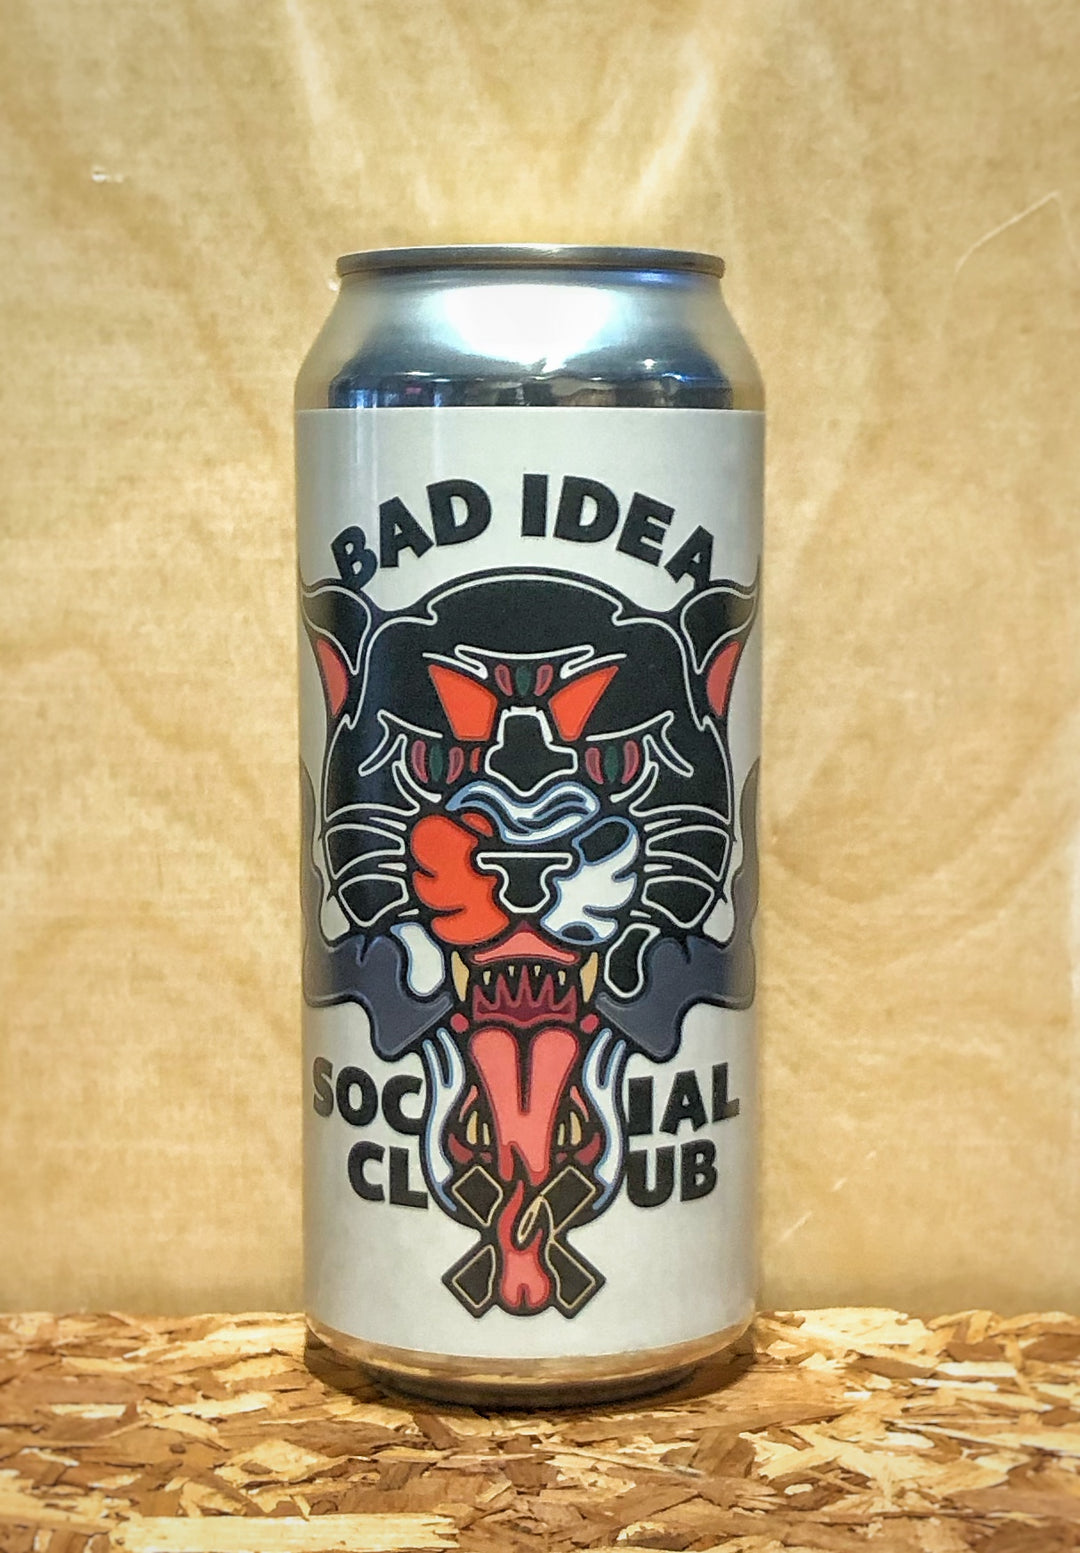 City Built Brewing Company 'Bad Idea Social Club' West Coast IPA (Grand Rapids, MI)